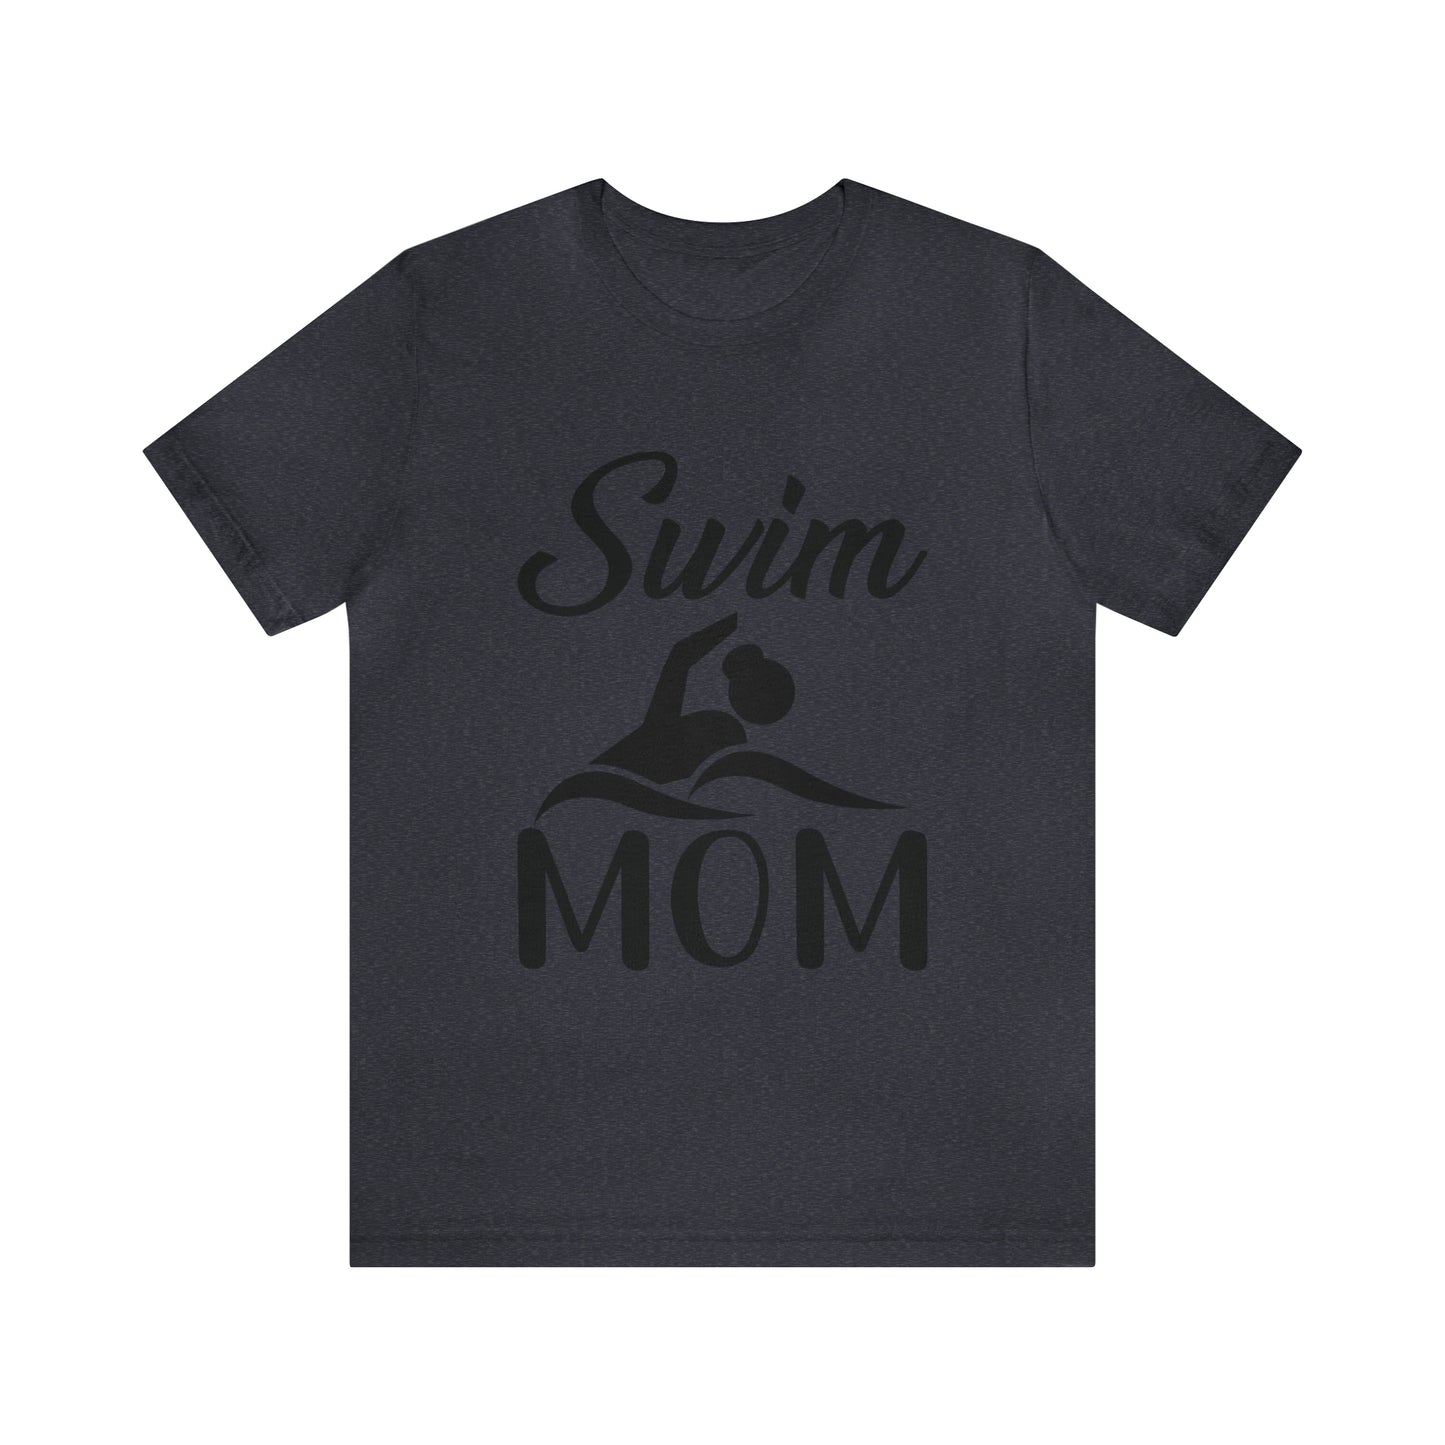 Swim Mom Short Sleeve Women's Tee